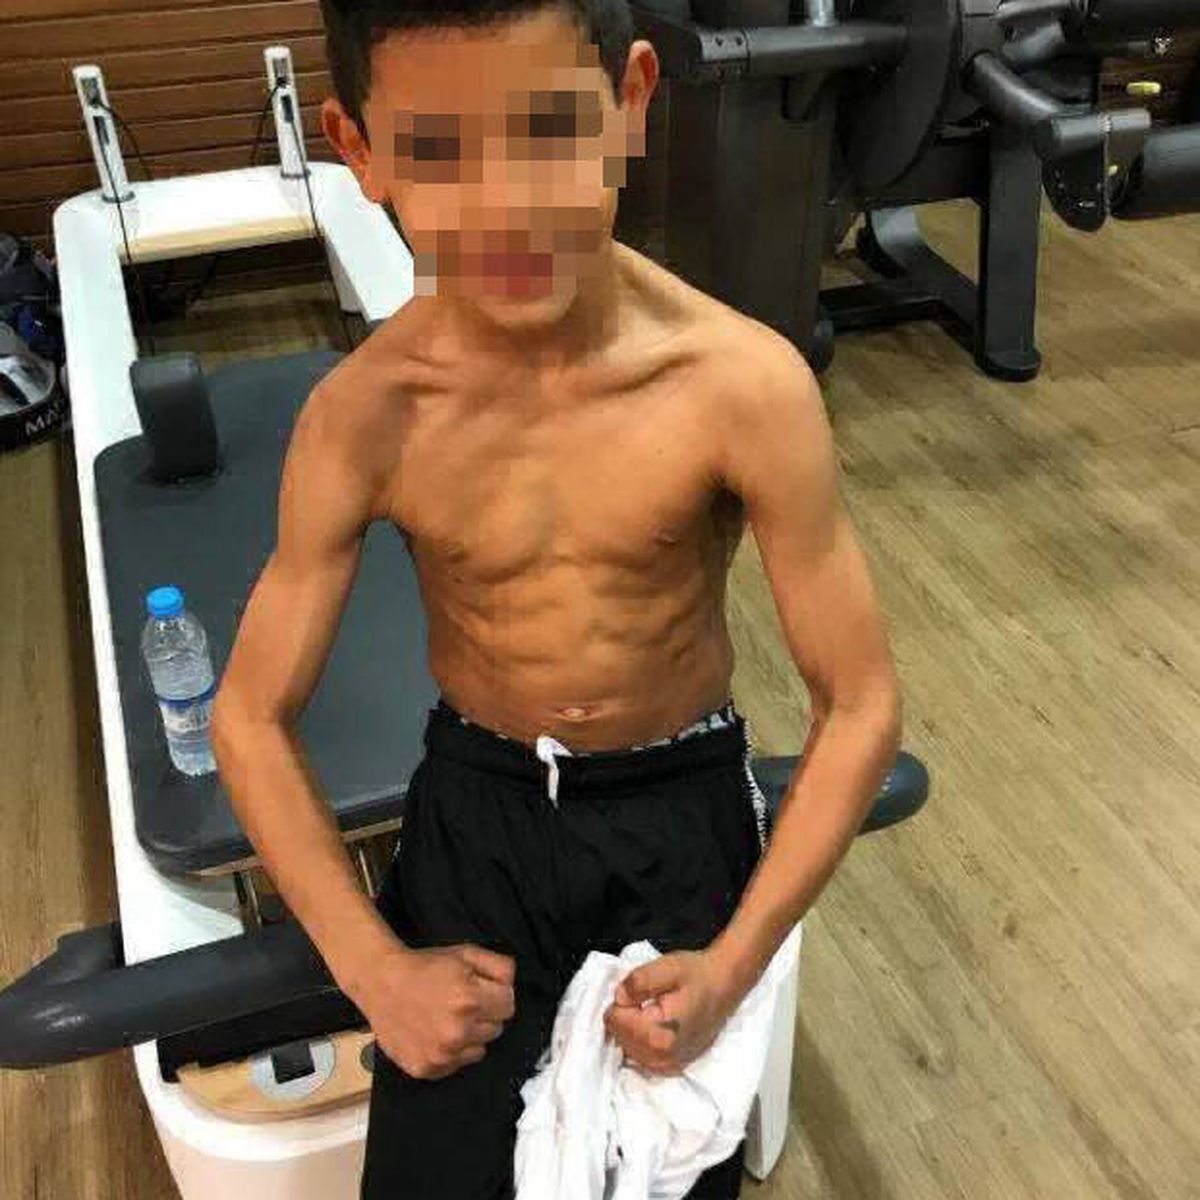 Cristiano Ronaldo publicó una foto de su hijo en el gimnasio y su estado  físico se llevó todas las miradas - LA NACION